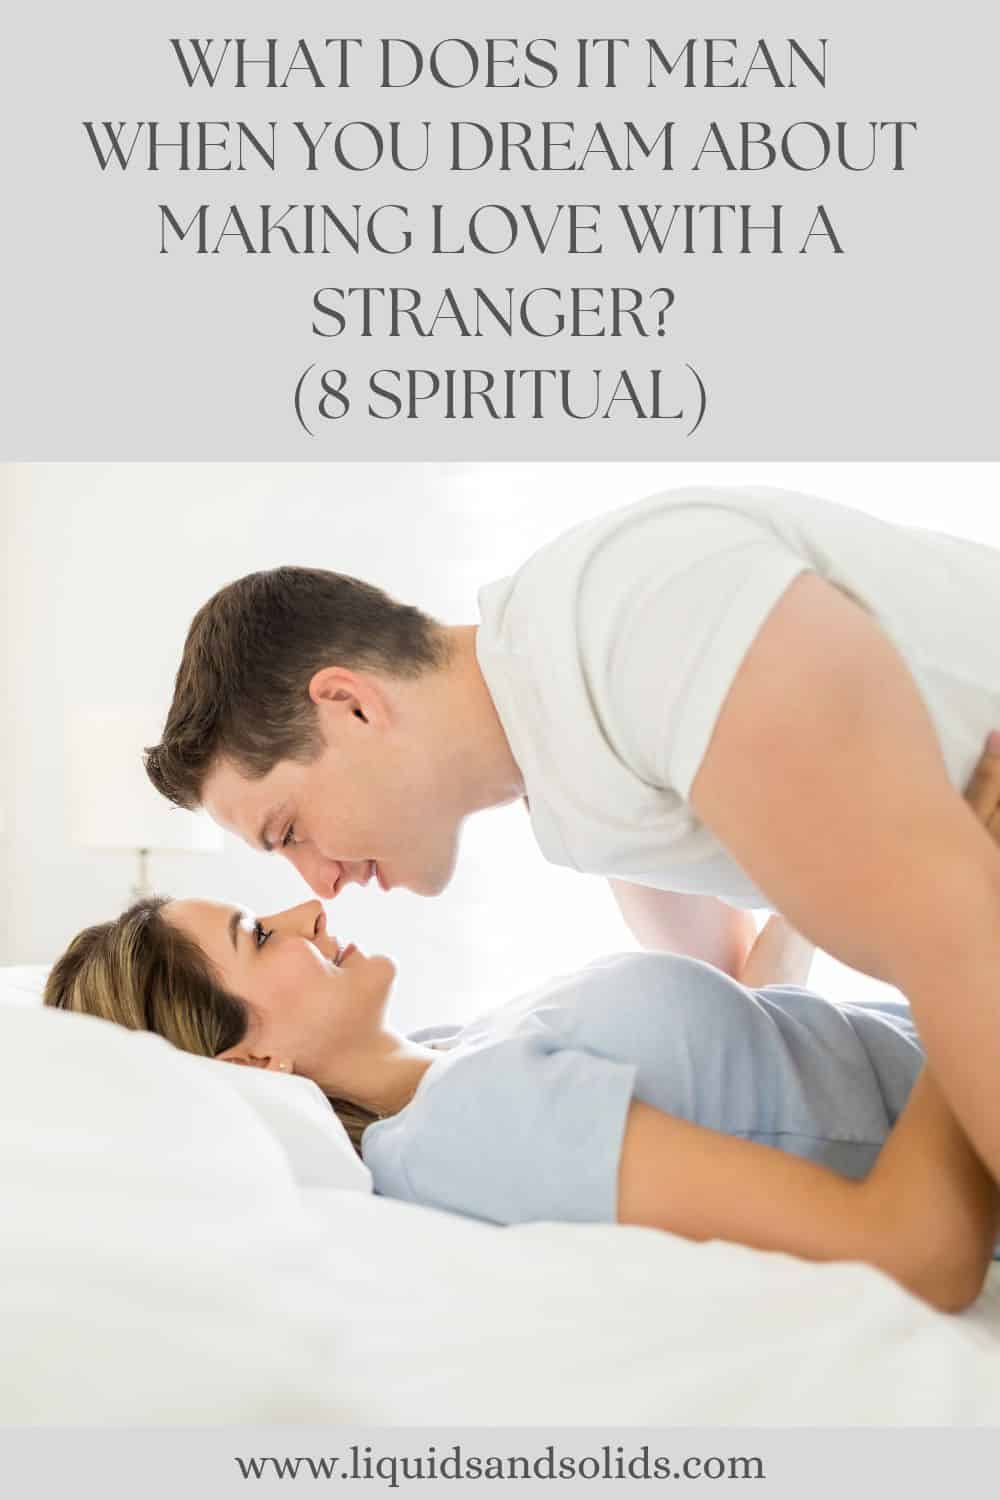  Álmodik, hogy egy idegennel szeretkezik? (8 spirituális jelentés)